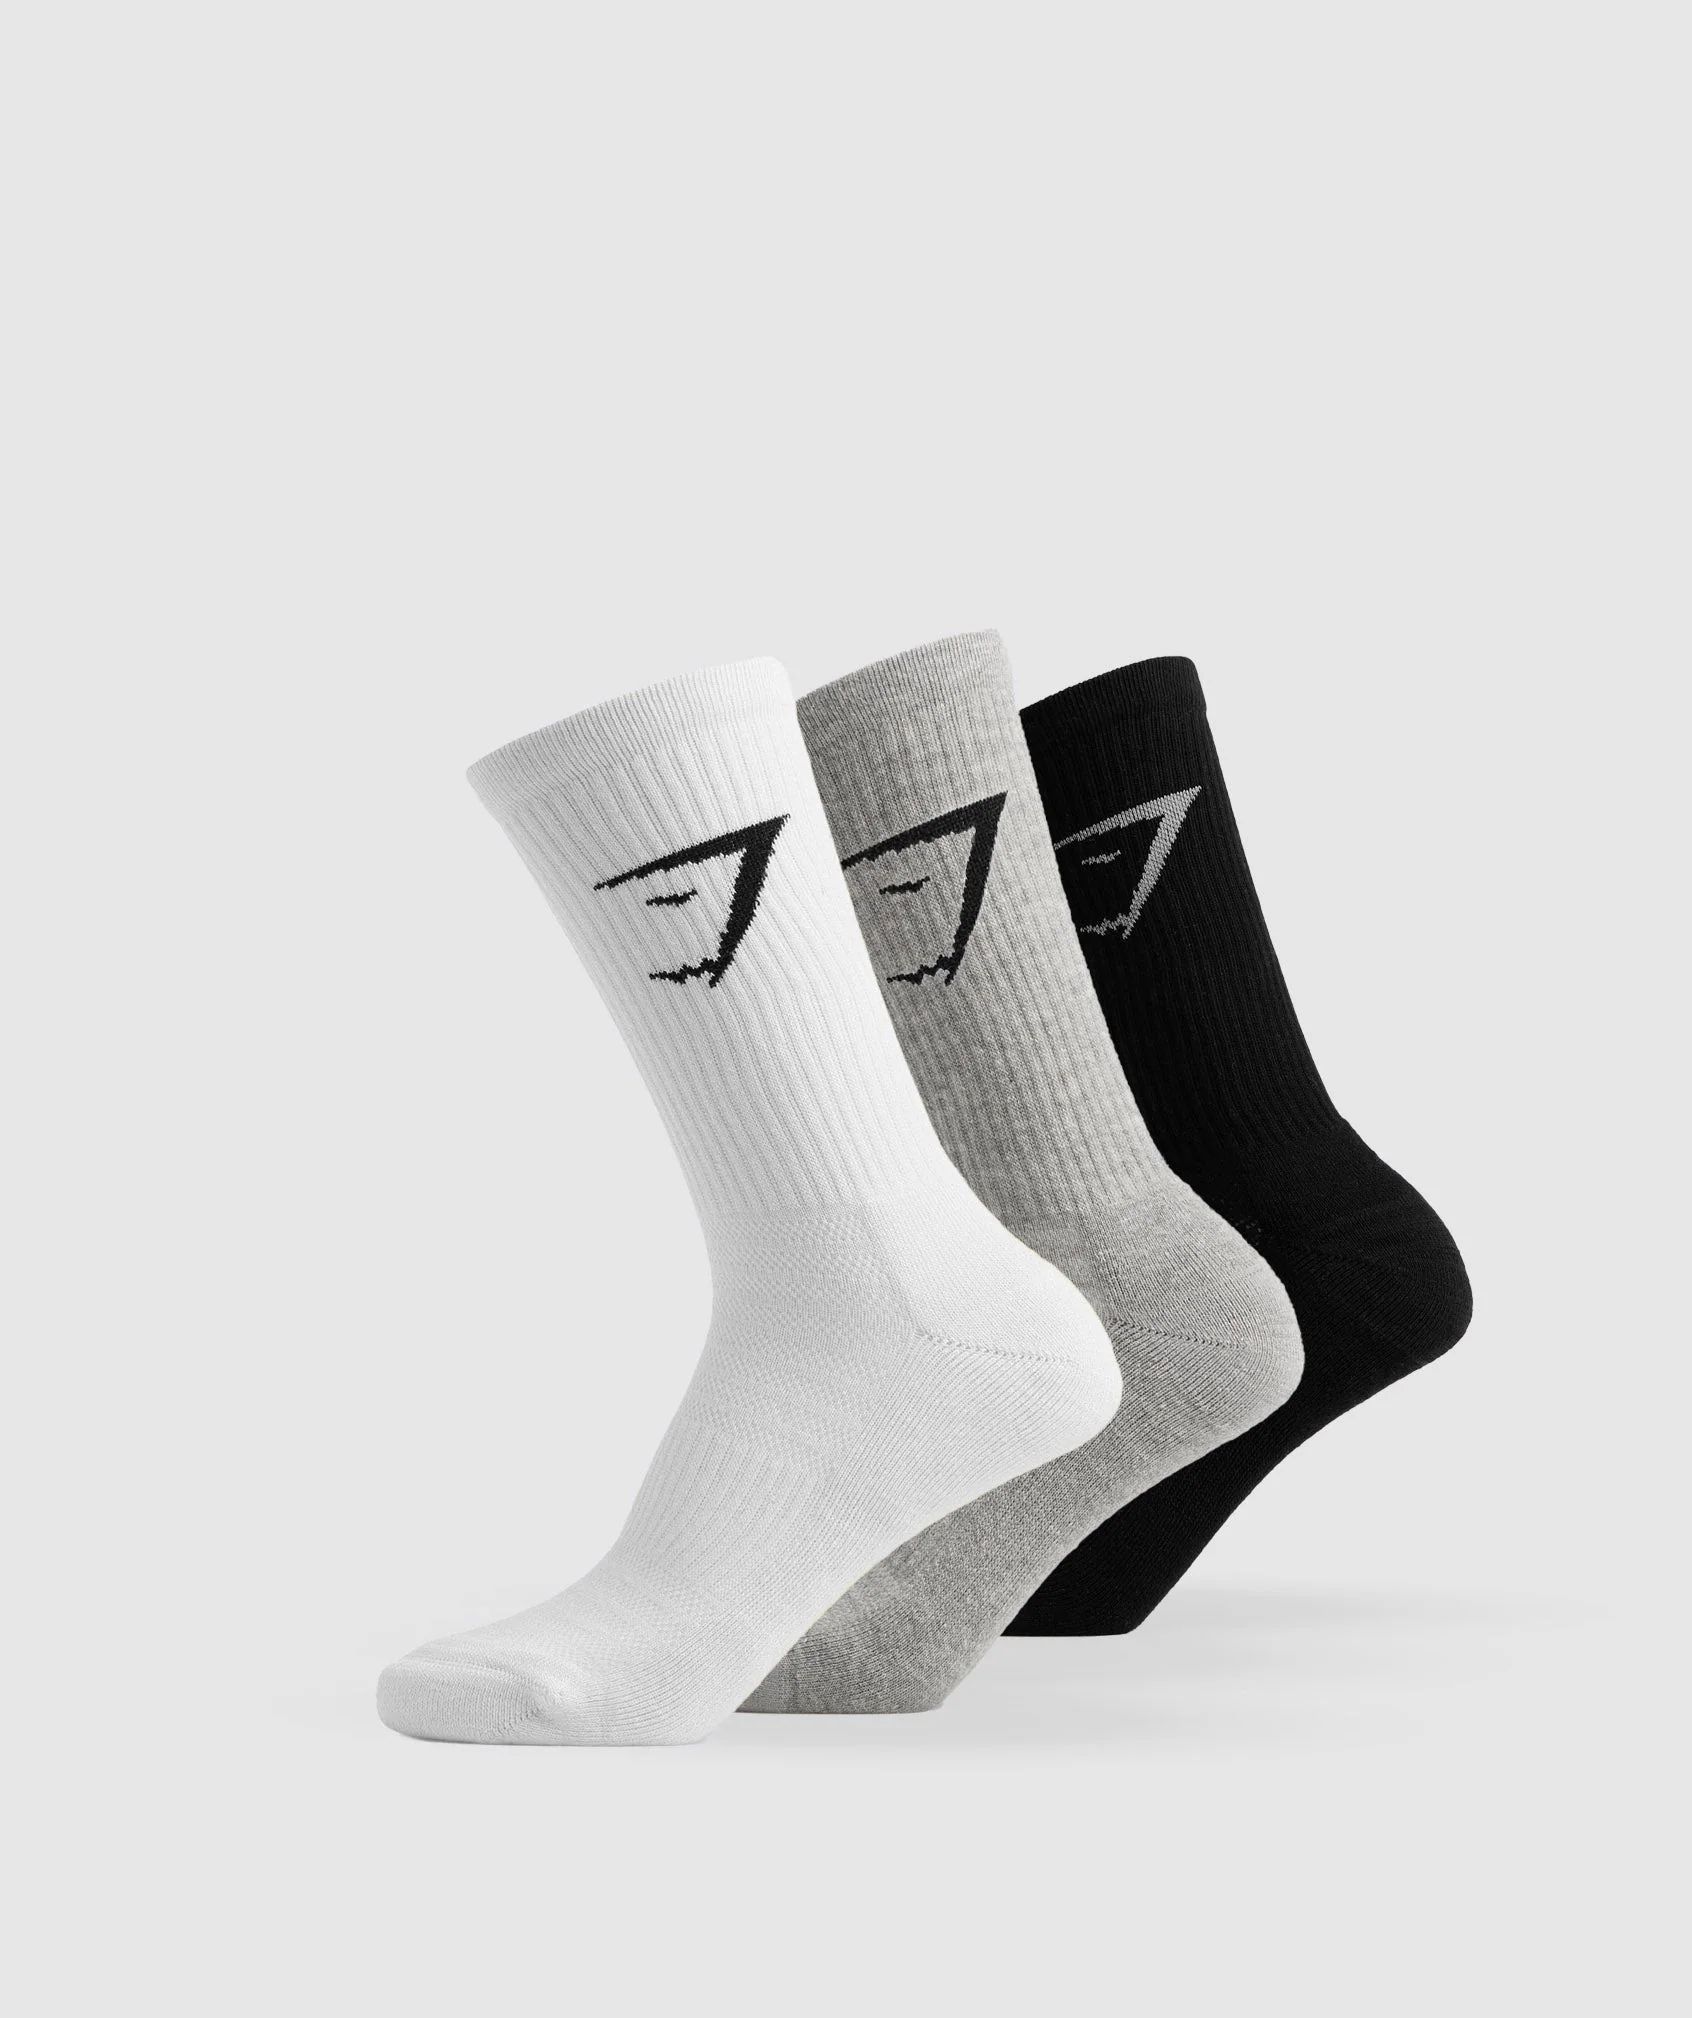 Gymshark Crew Socks 3pk - White/Light Grey Core Marl/Black | Gymshark US